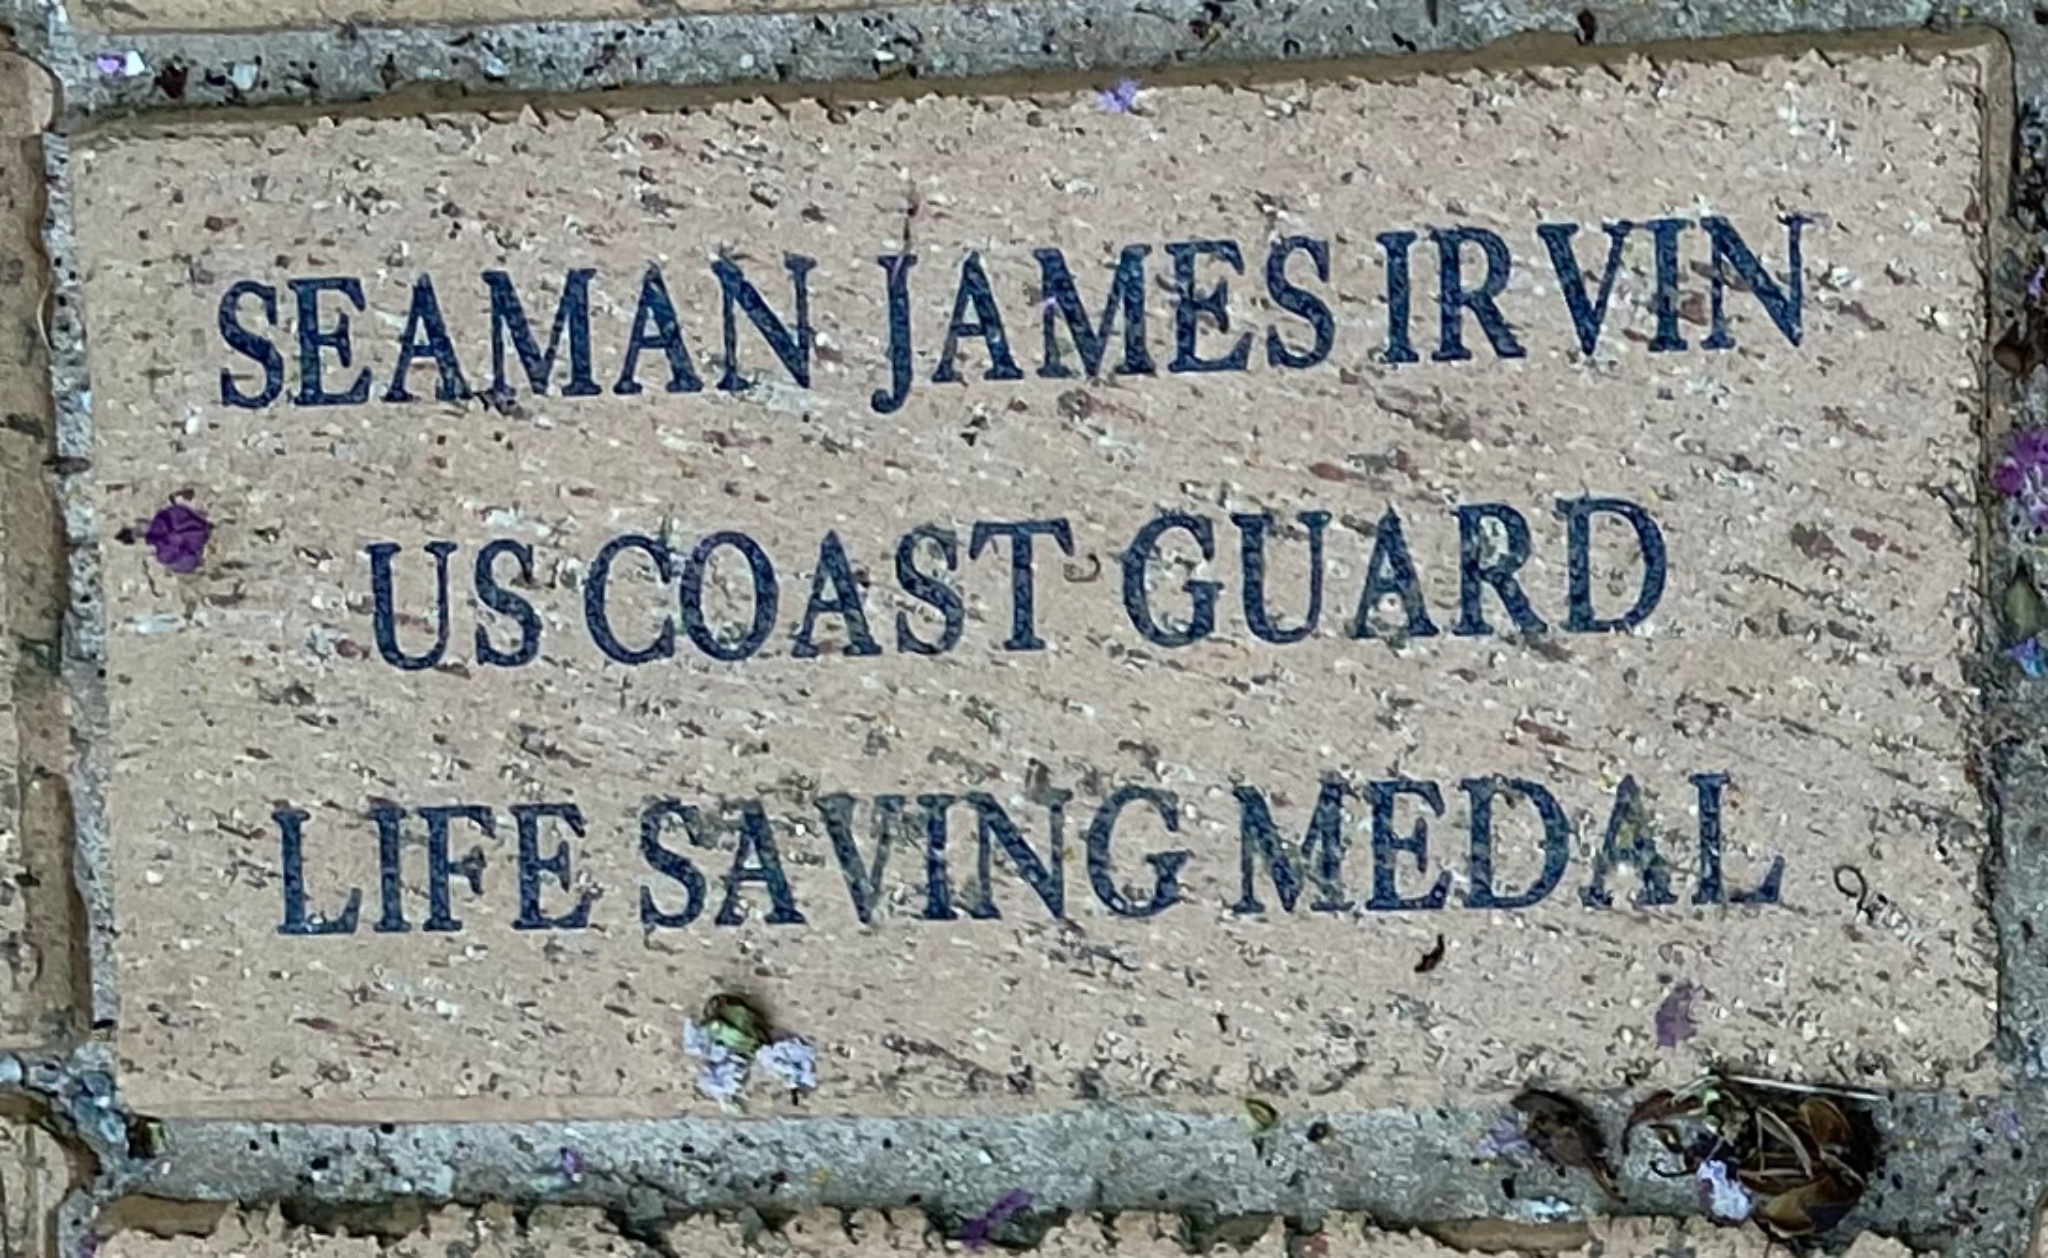 Seaman James Irvin US Coast Guard Life Saving Medal